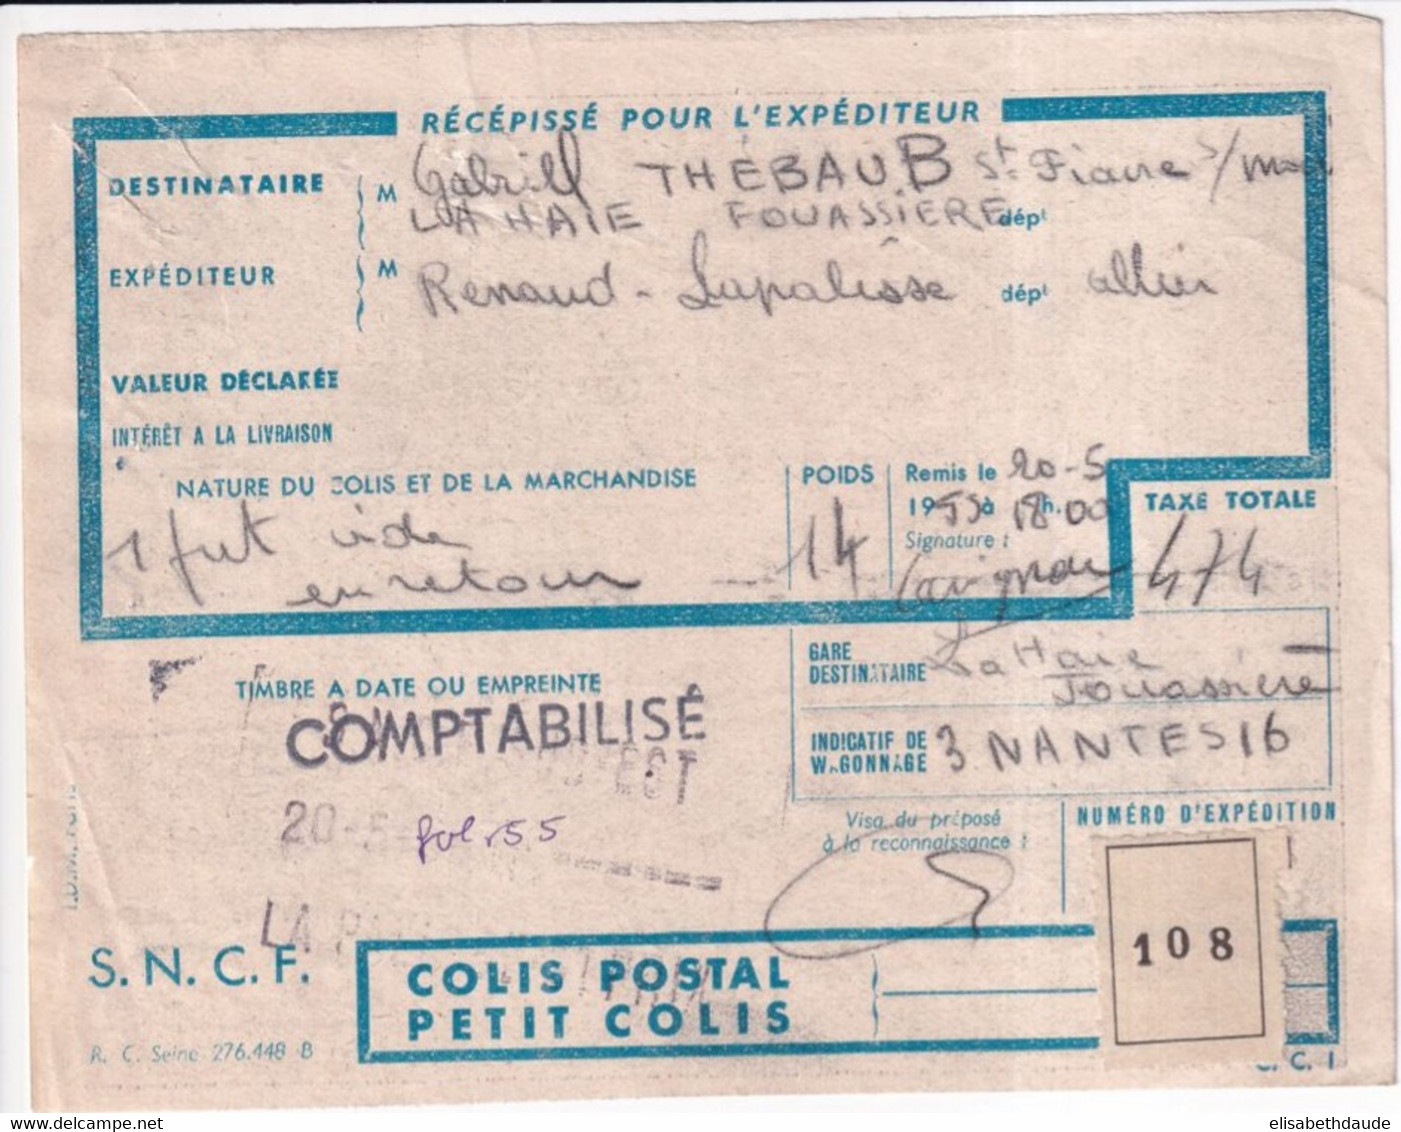 COLIS POSTAUX - 1955 - RECEPISSE EXPEDITION De LAPALISSE (ALLIER) => LA HAIE FOUASSIERE (LOIRE INFERIEURE) - Briefe U. Dokumente